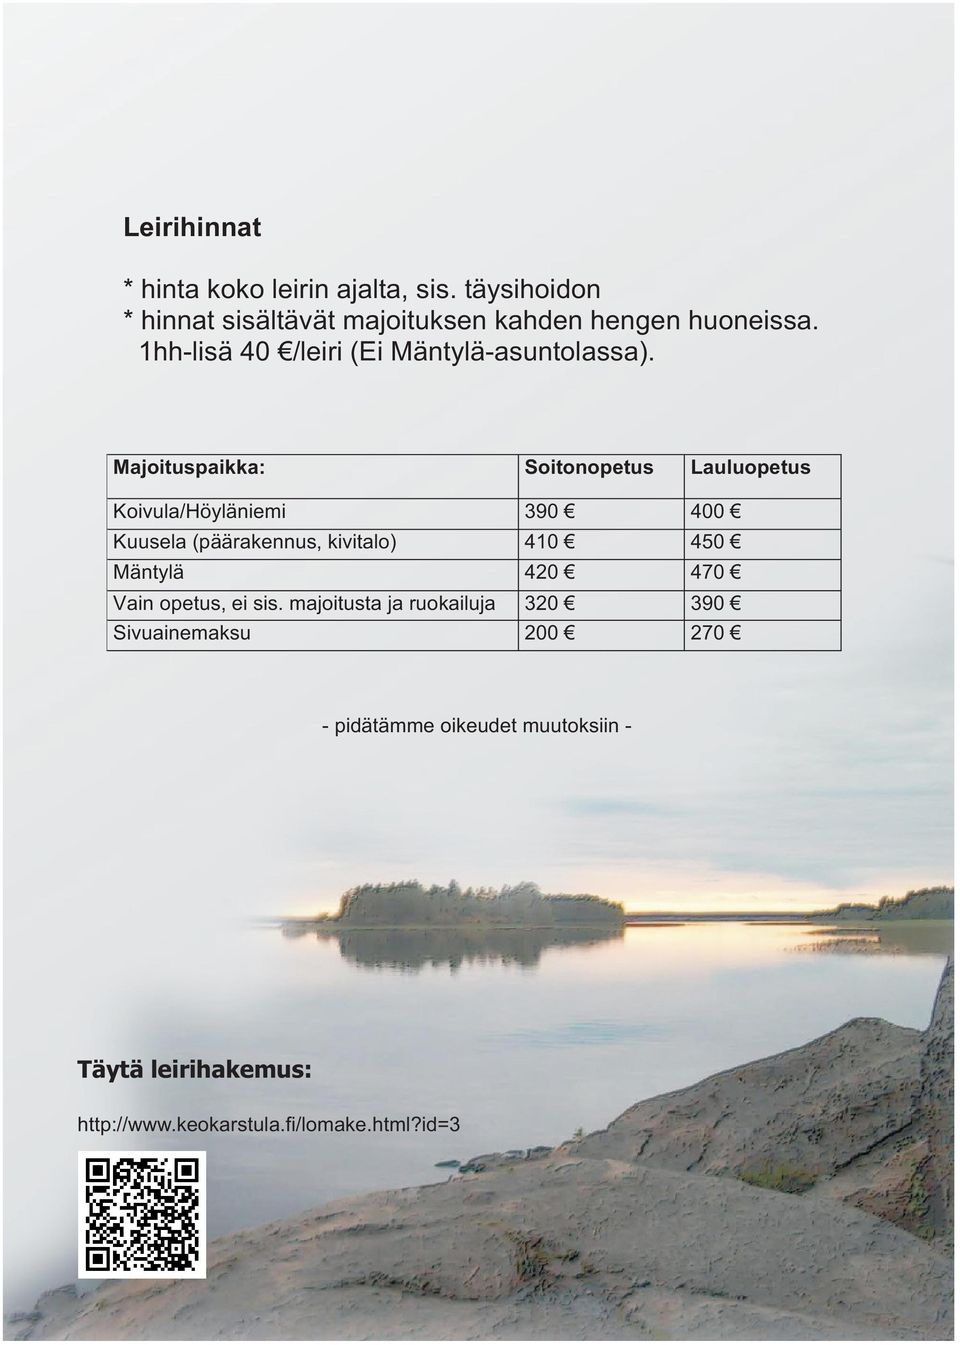 Majoituspaikka: Soitonopetus Lauluopetus Koivula/Höyläniemi 390 400 Kuusela (päärakennus, kivitalo) 410 450